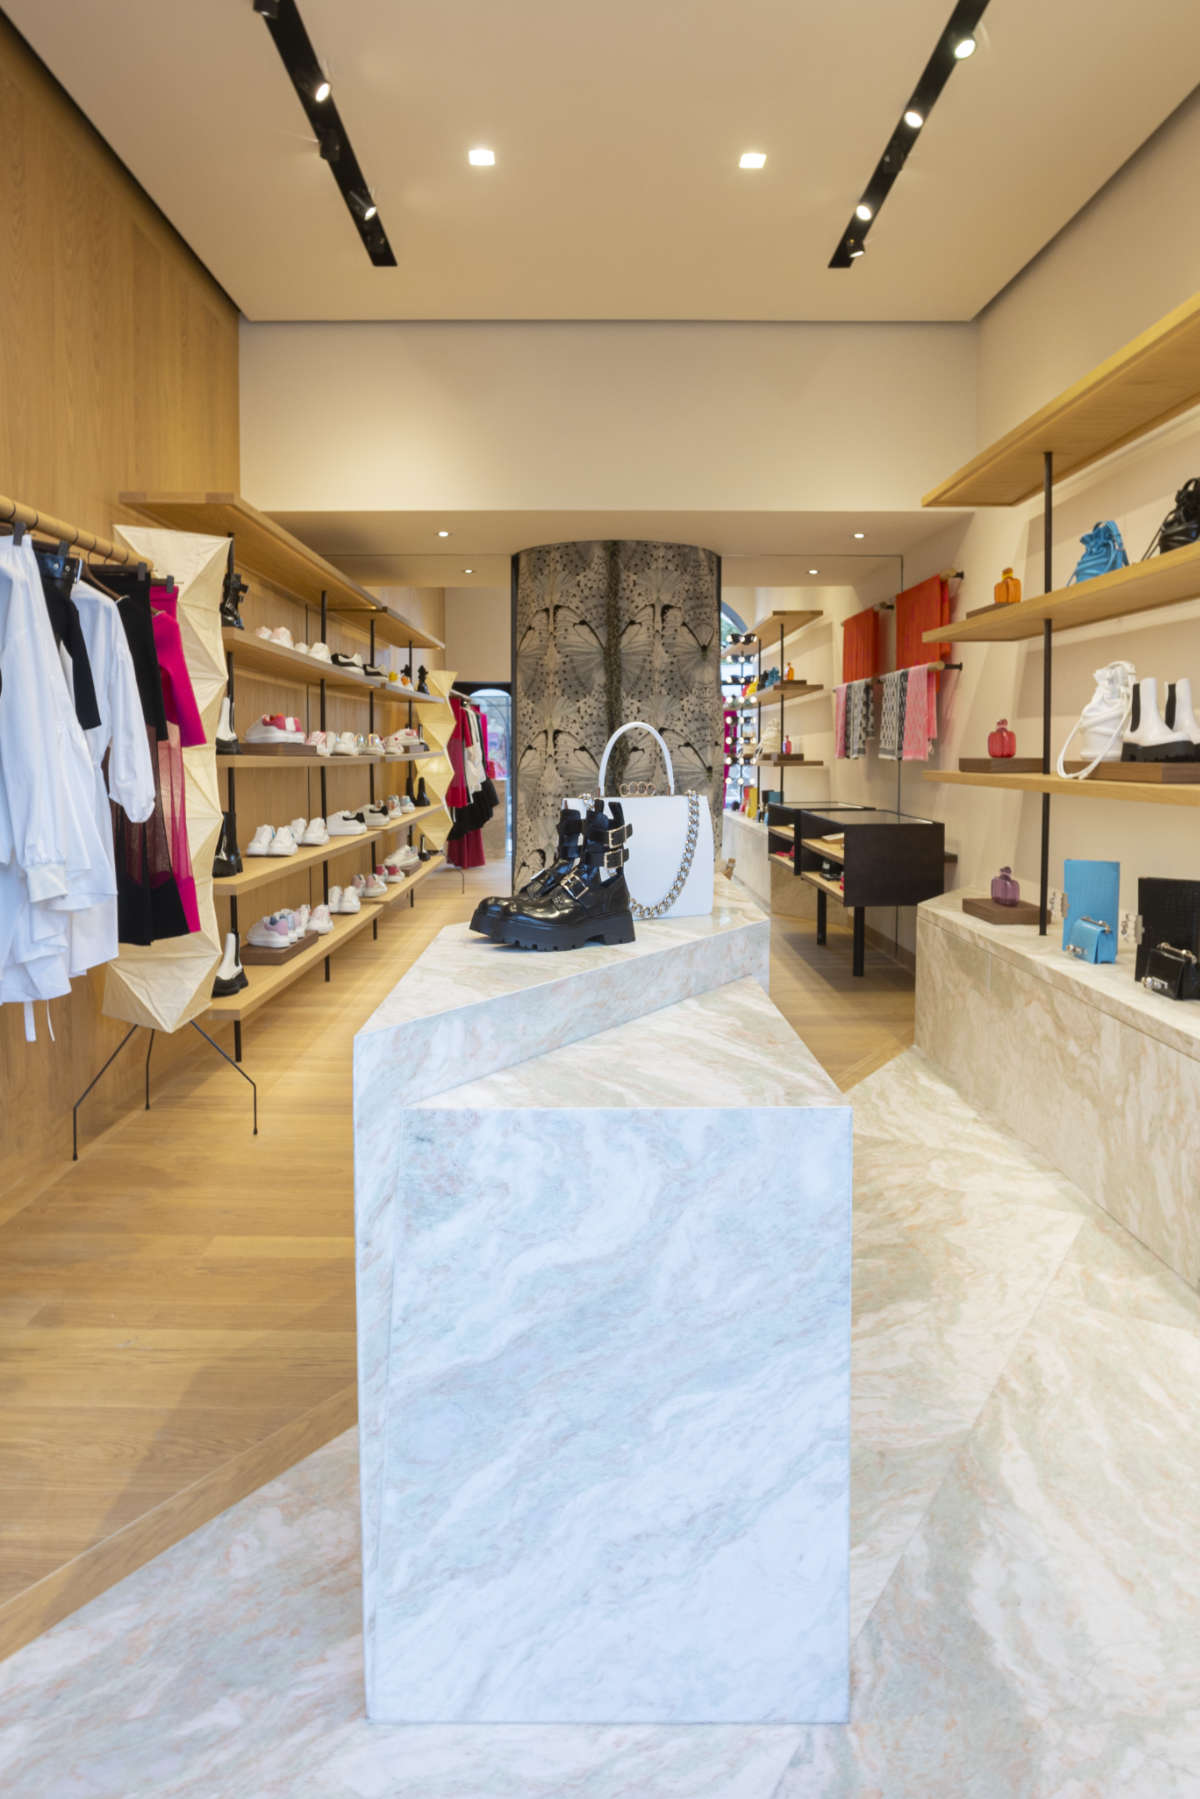 Alexander McQueen: Alexander McQueen Opened Its New Store In Portofino,  Italy - Luxferity